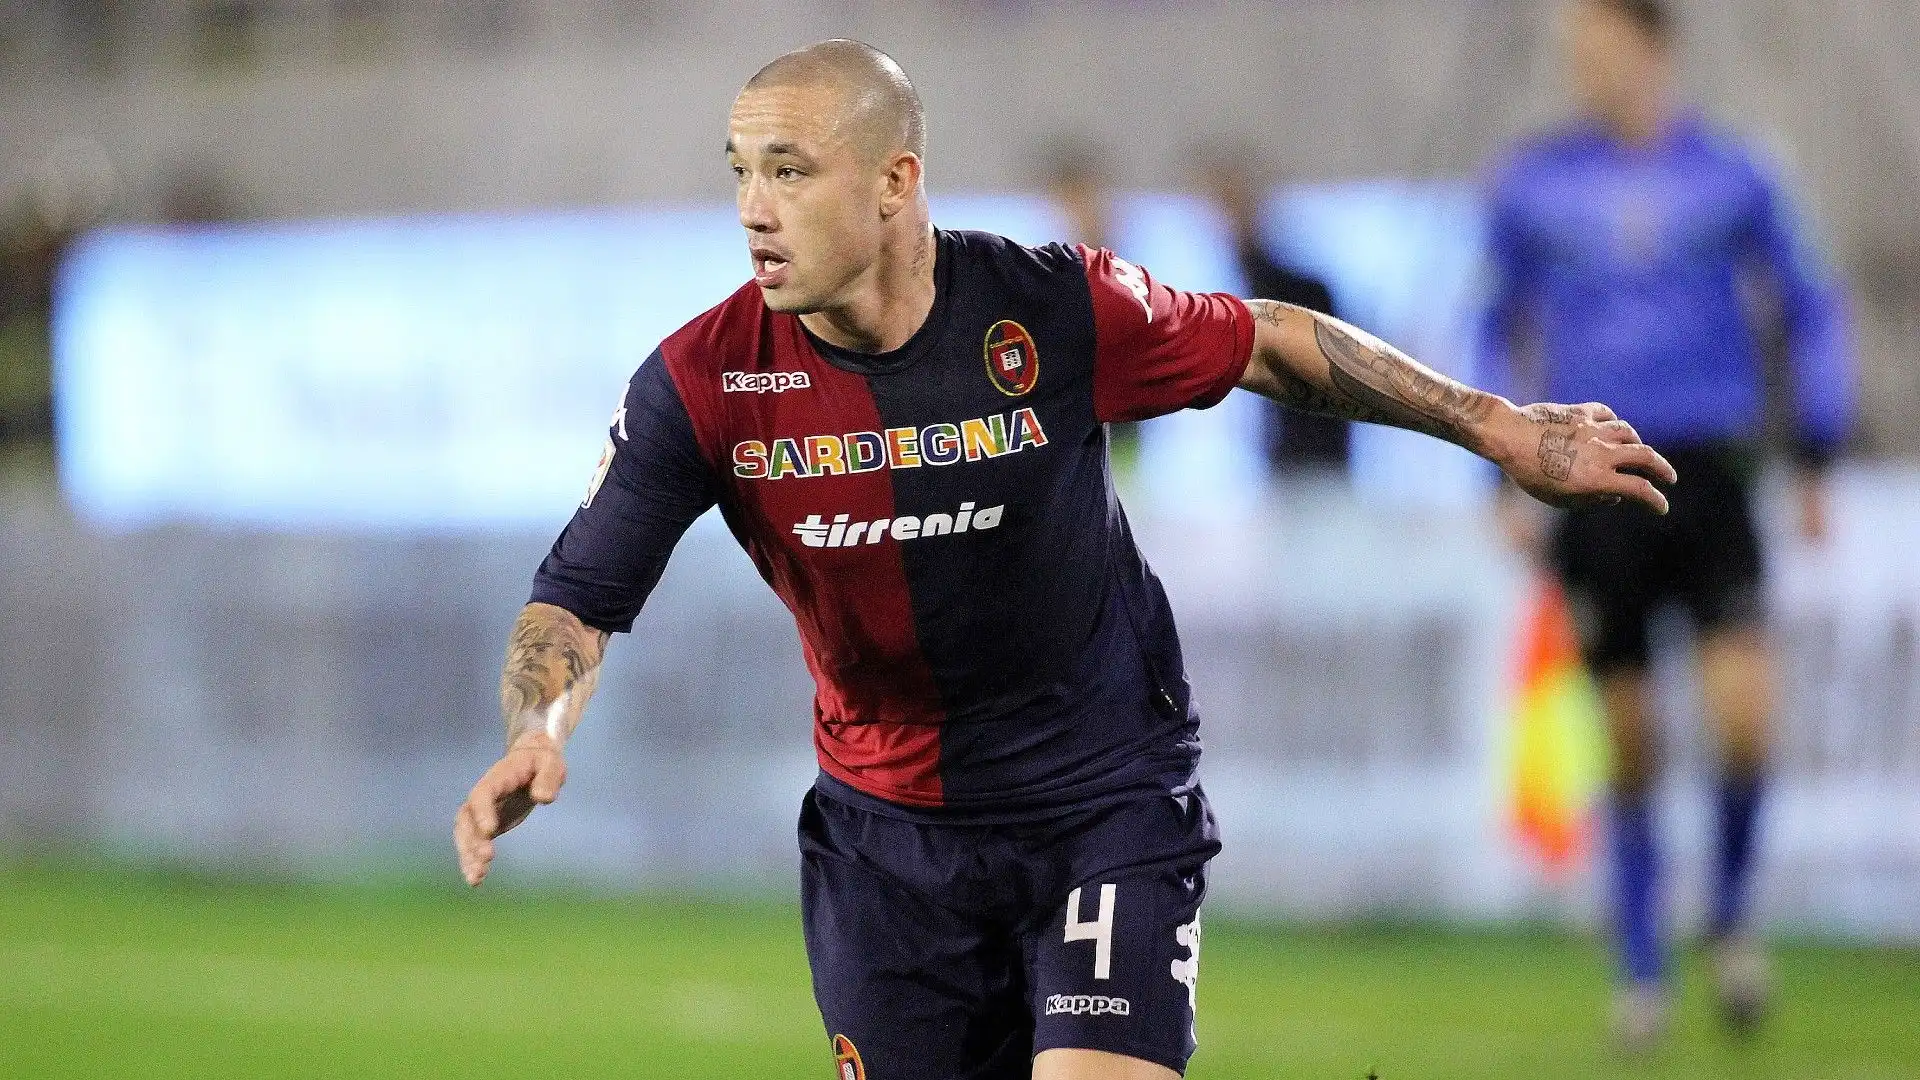 Cresciuto nel Piacenza, si è fatto notare per le prestazioni con la maglia del Cagliari